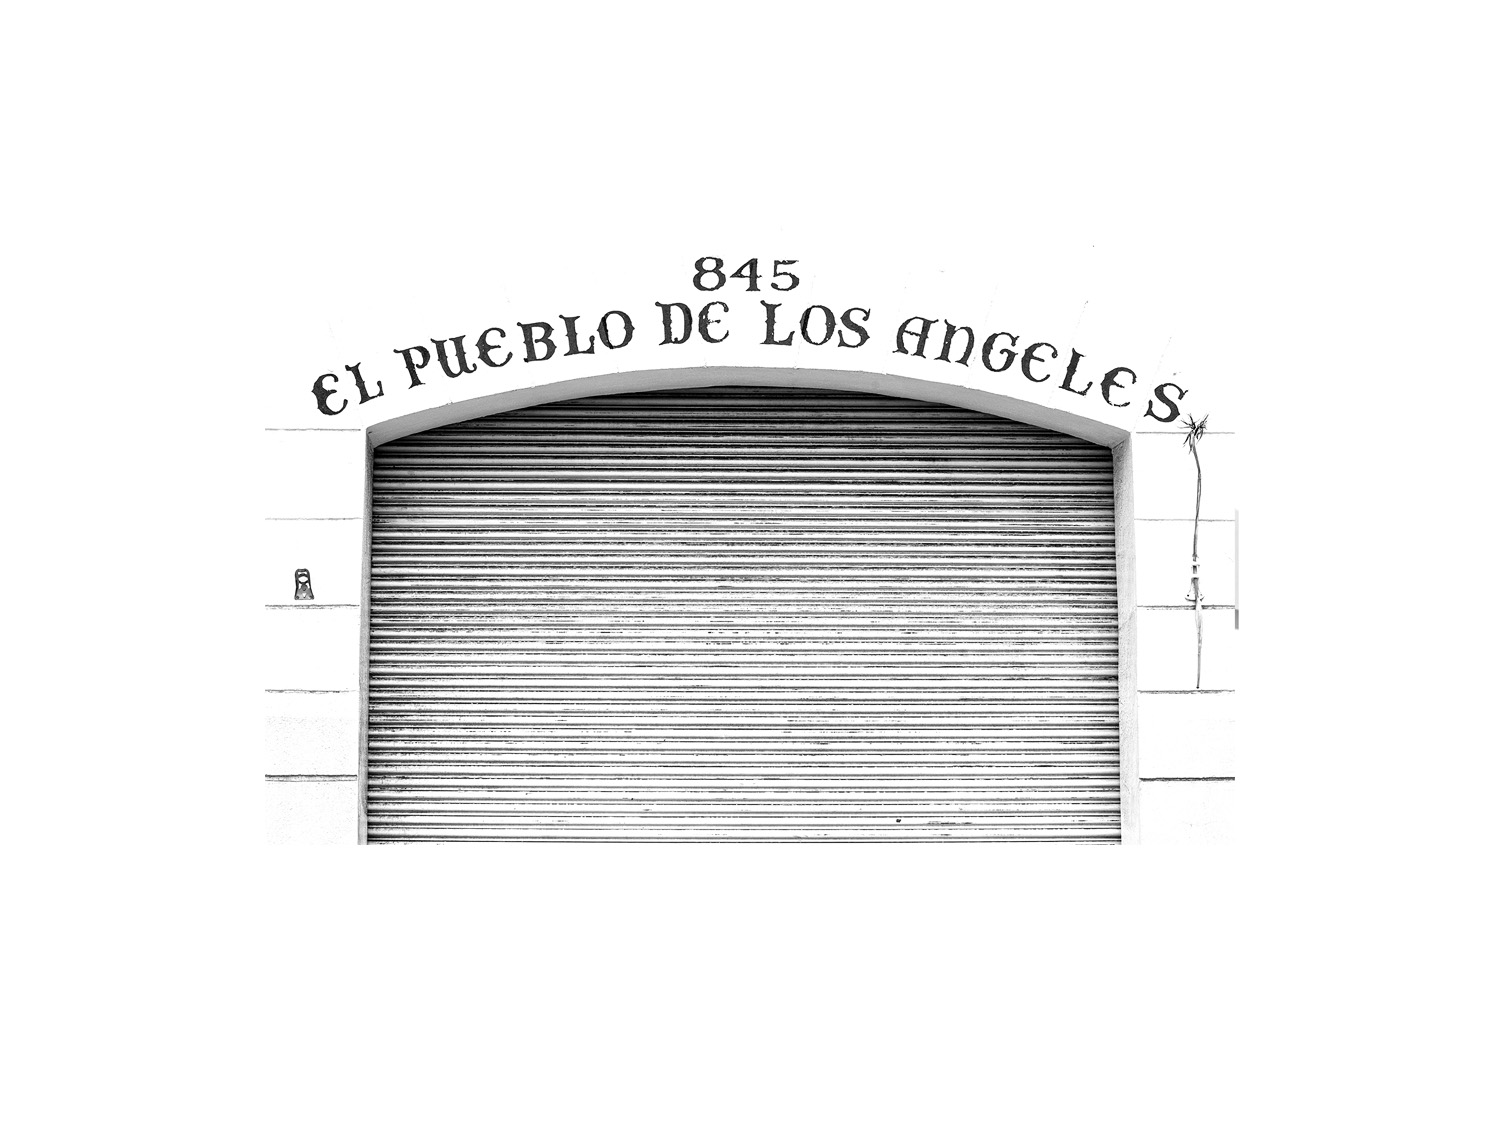 El Pueblo De Los Angeles